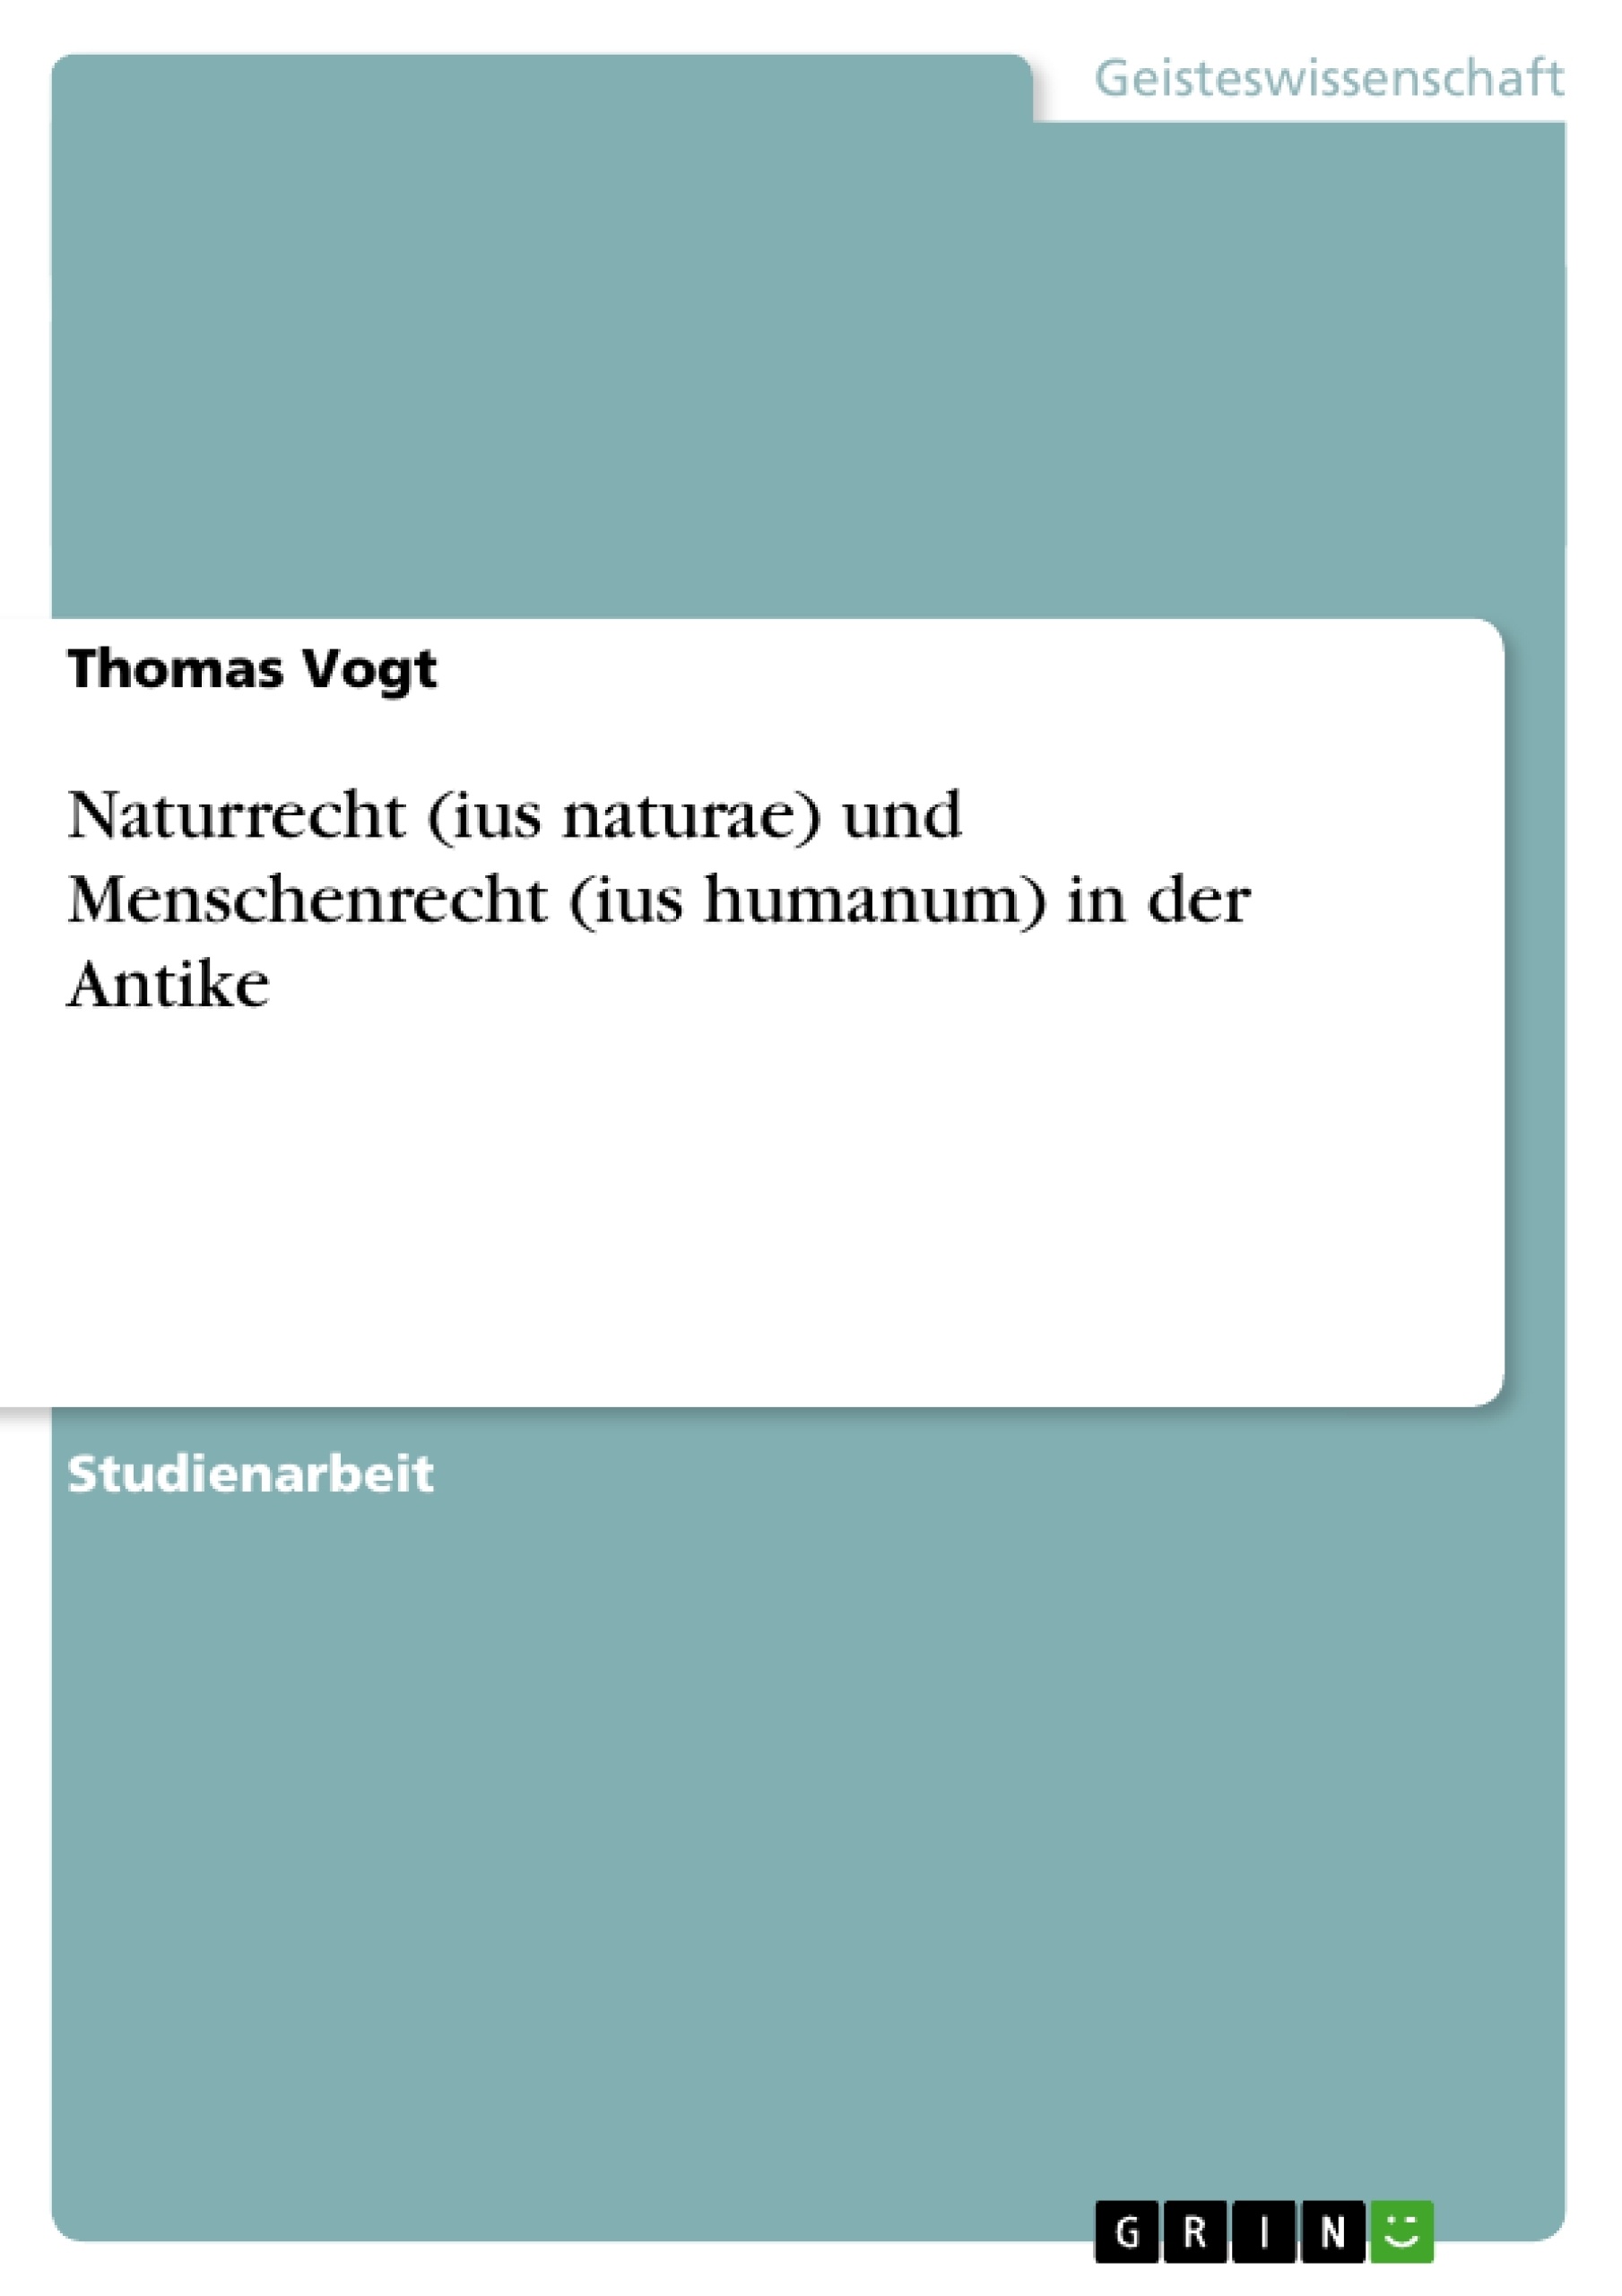 Title: Naturrecht (ius naturae) und Menschenrecht (ius humanum) in der Antike